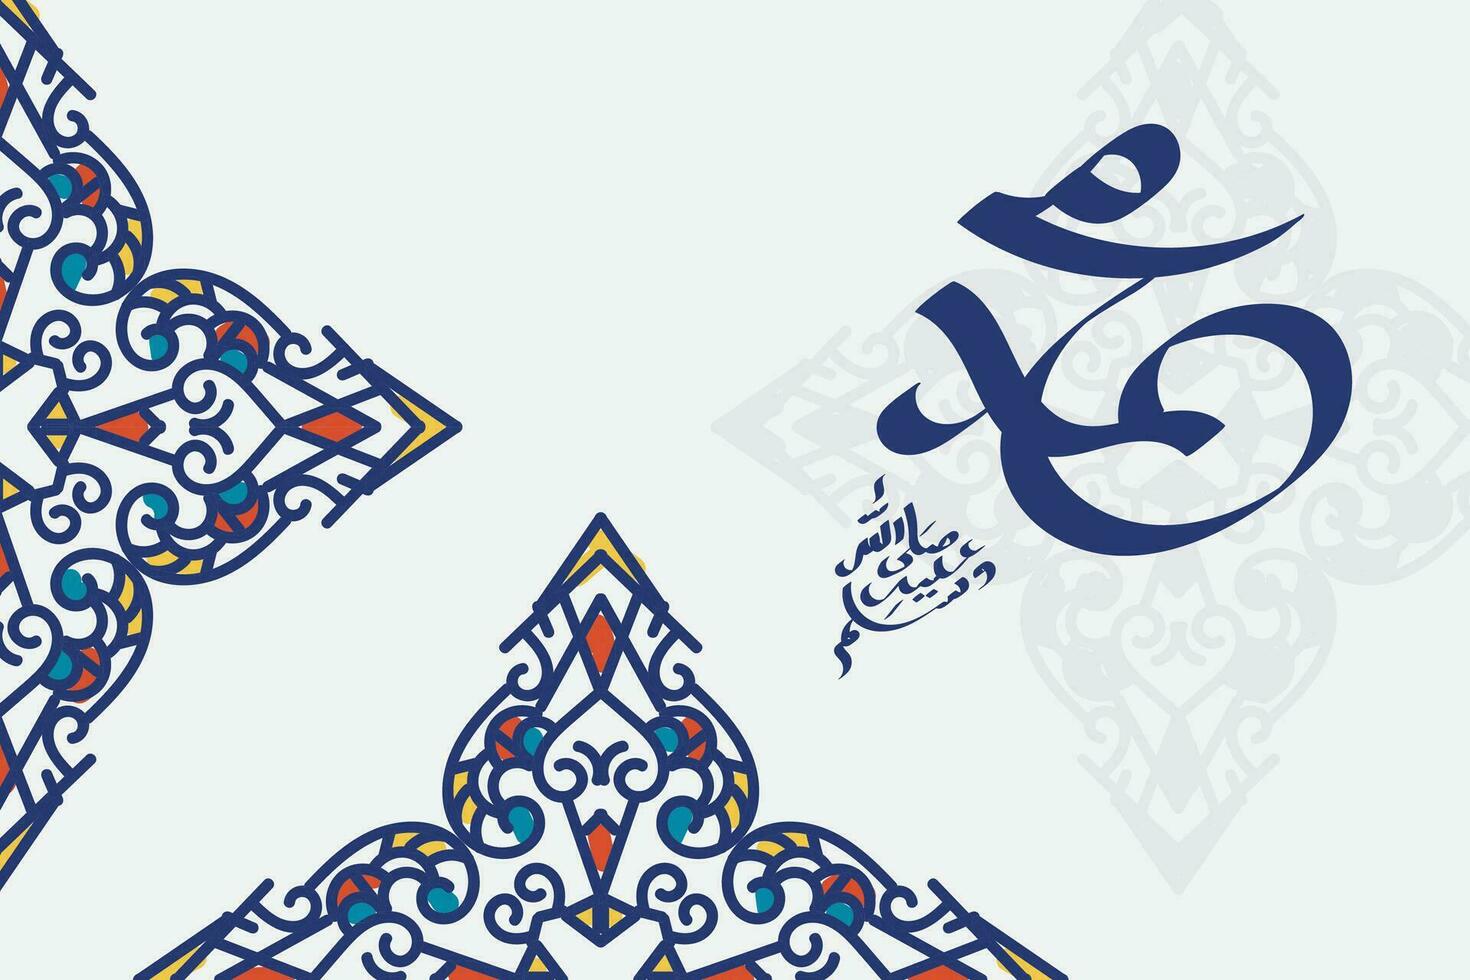 Arabo e islamico calligrafia di il profeta Maometto, pace essere su lui, tradizionale e moderno islamico arte può essere Usato per molti temi piace mawlid, EL nabawi. traduzione, il profeta Maometto vettore